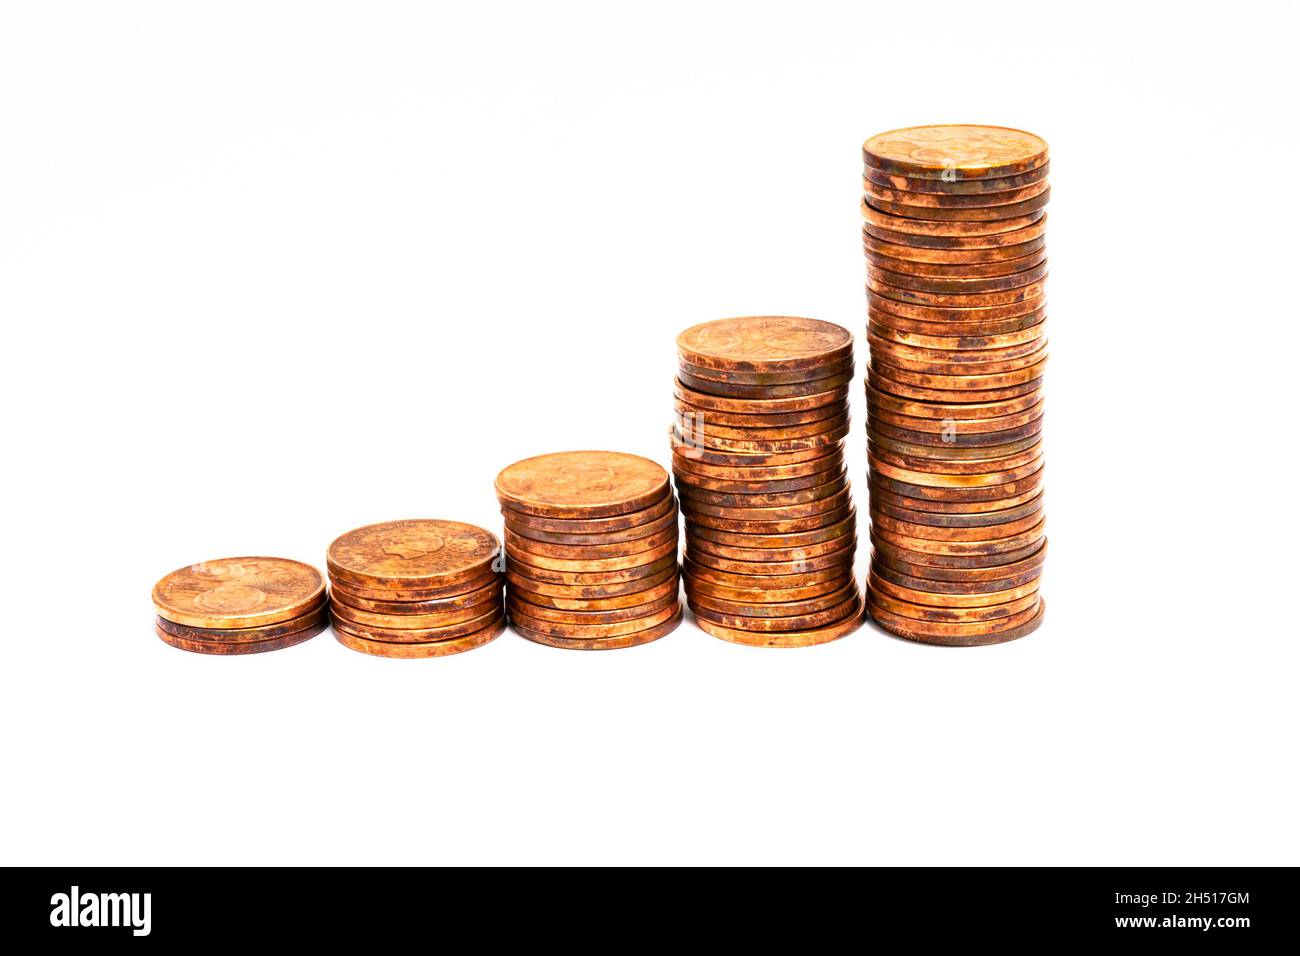 Piles de pièces de 5 cents qui augmentent progressivement en hauteur.Symbolique pour la croissance économique ou pour l'inflation. Banque D'Images